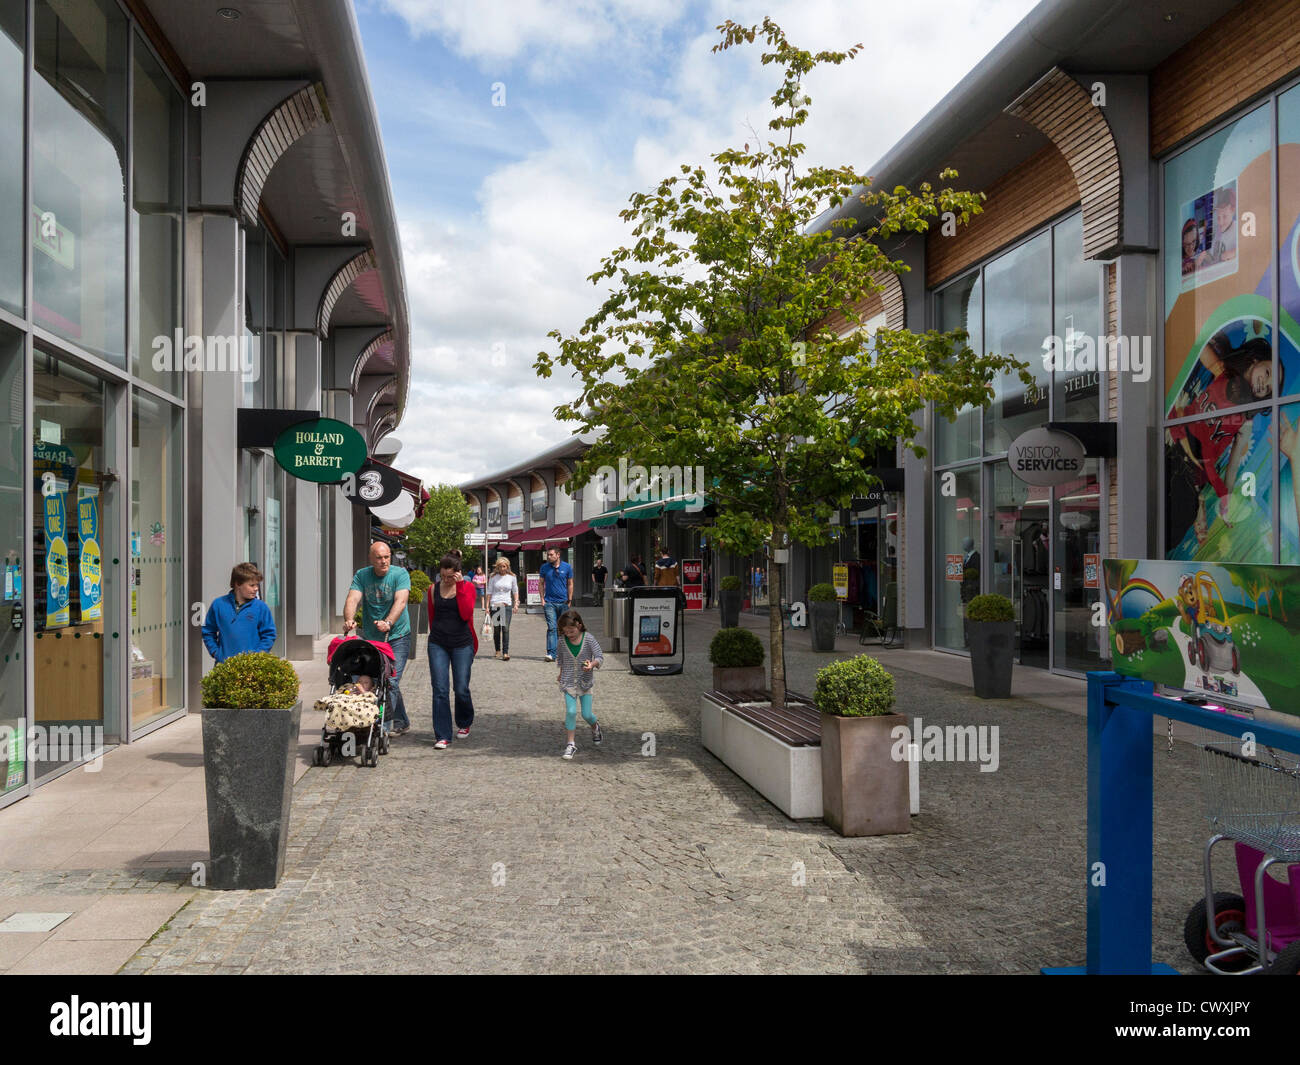 Les consommateurs à la sortie, Banbridge, comté de Down, Irlande du Nord Banque D'Images